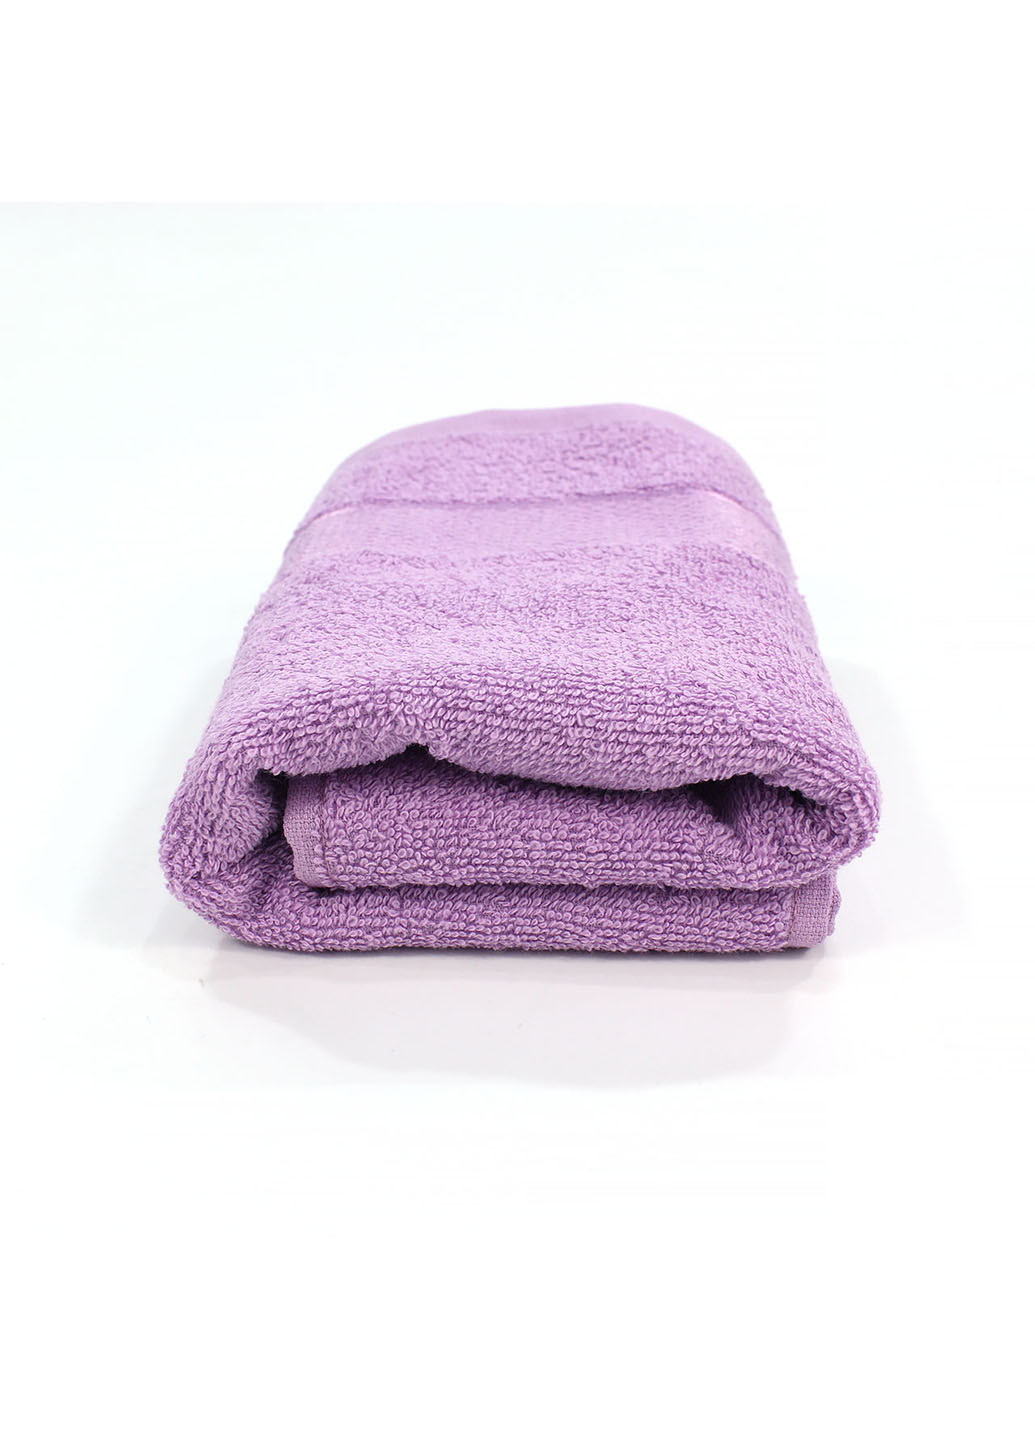 Еней-Плюс полотенце махровое бс0024 40х70 фиолетовый производство - Украина